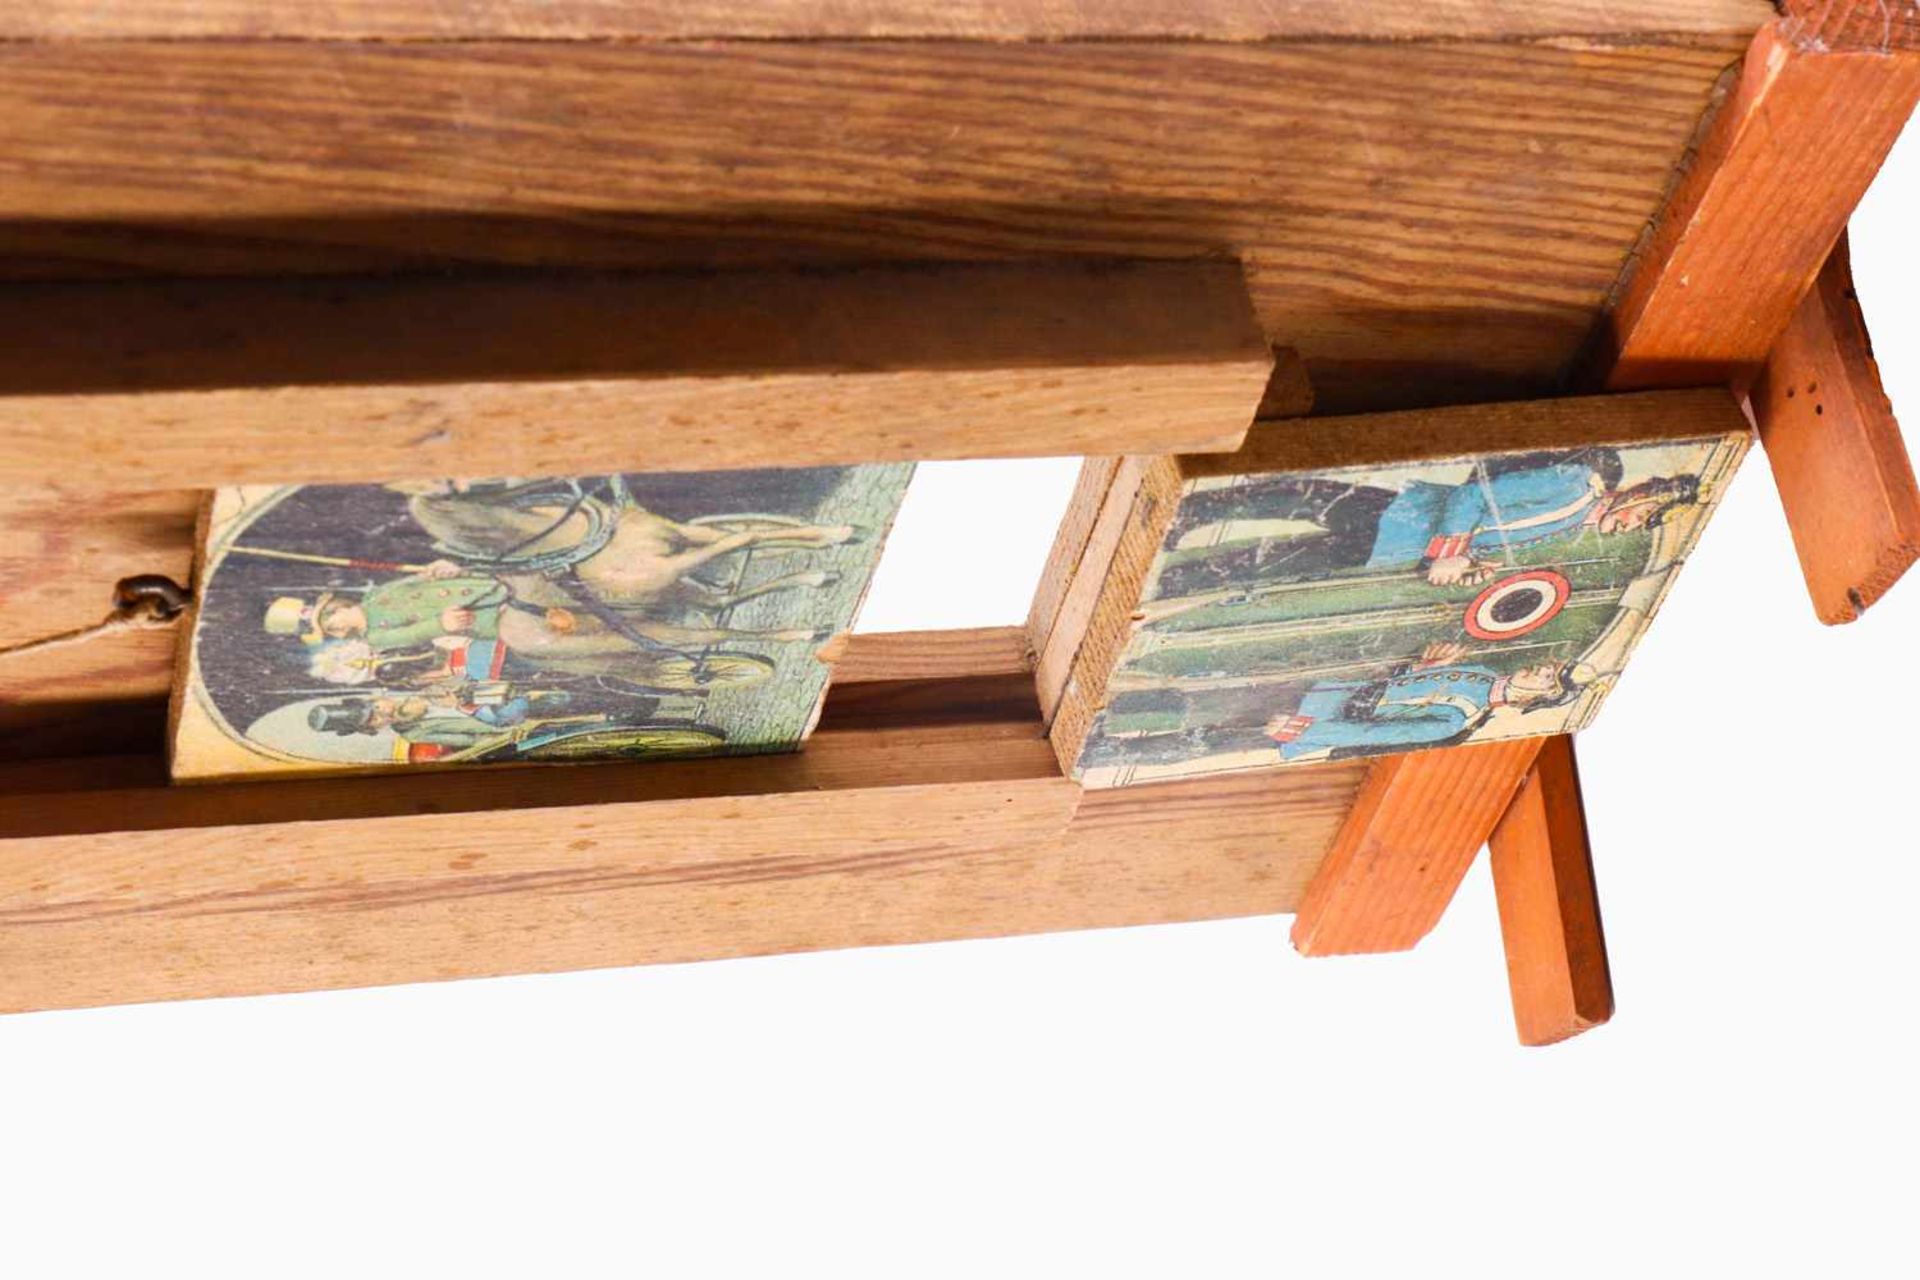 Zielscheibe für Schießspiel, um 1900, Holz, papierbeklebt, Höhe 34 cm, guter Zustand- - -22.50 % - Bild 3 aus 3